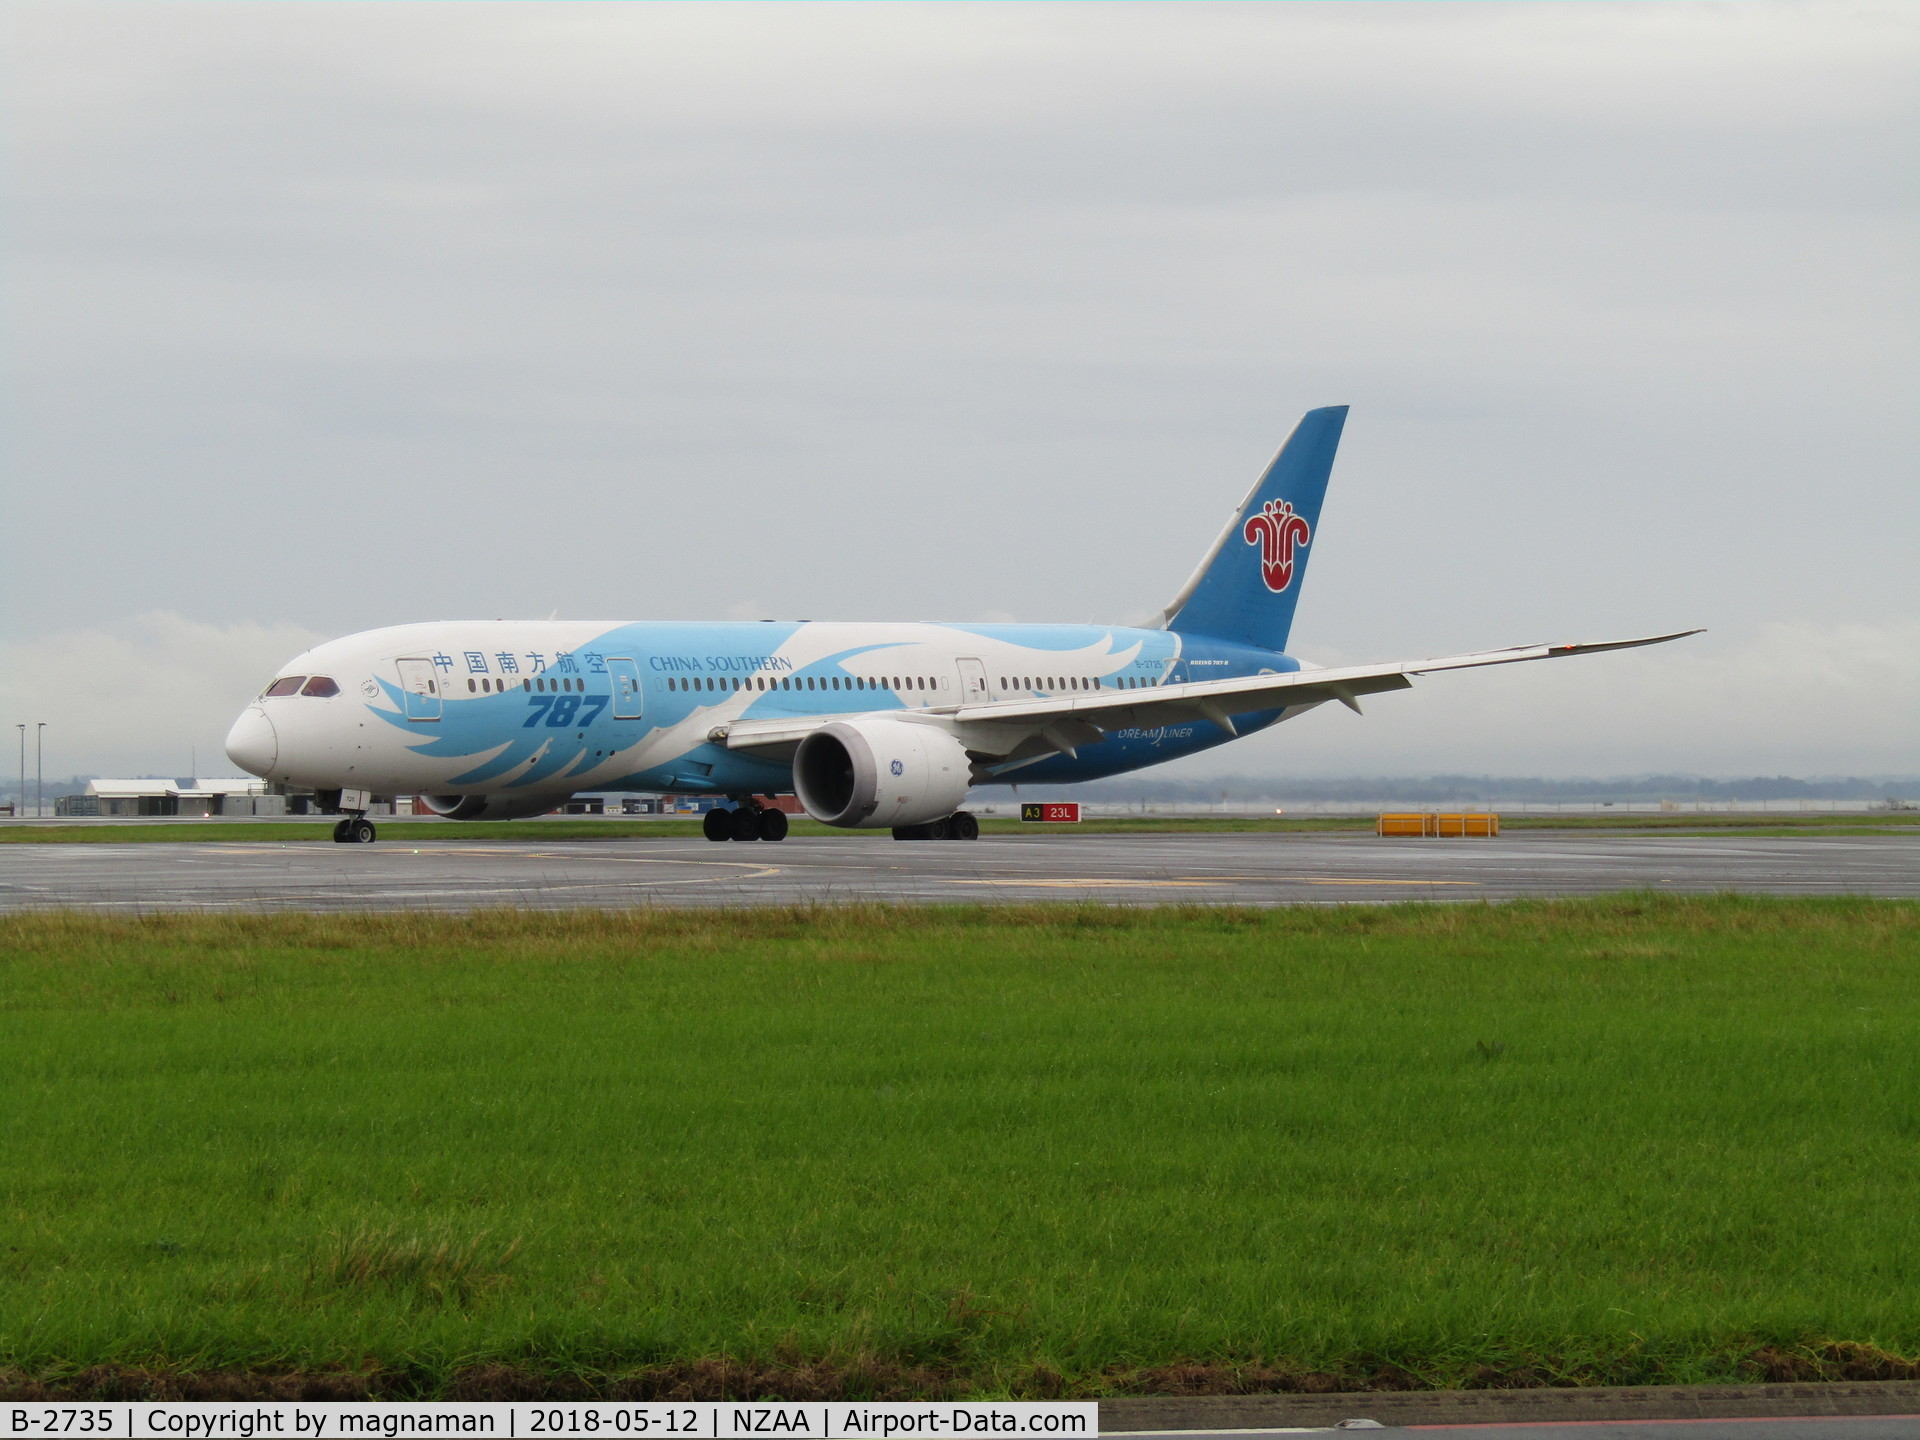 B-2735, 2013 Boeing 787-8 Dreamliner C/N 34928, just landed